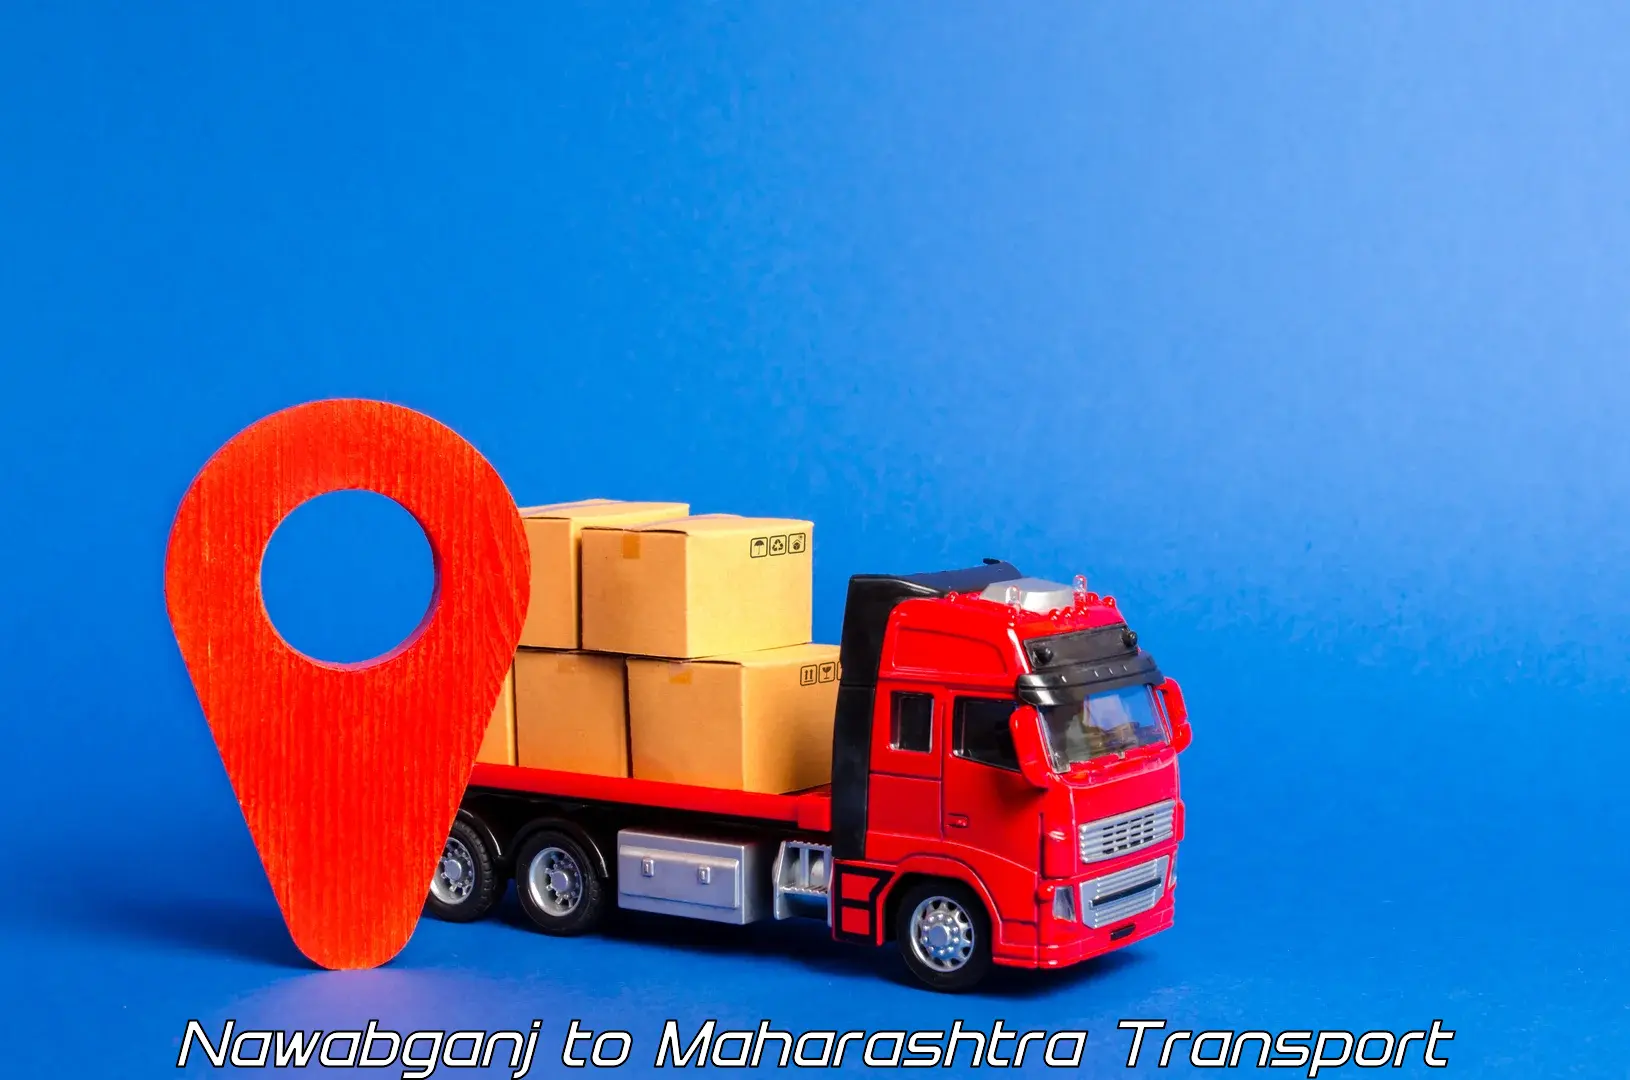 Air freight transport services Nawabganj to Ballarpur